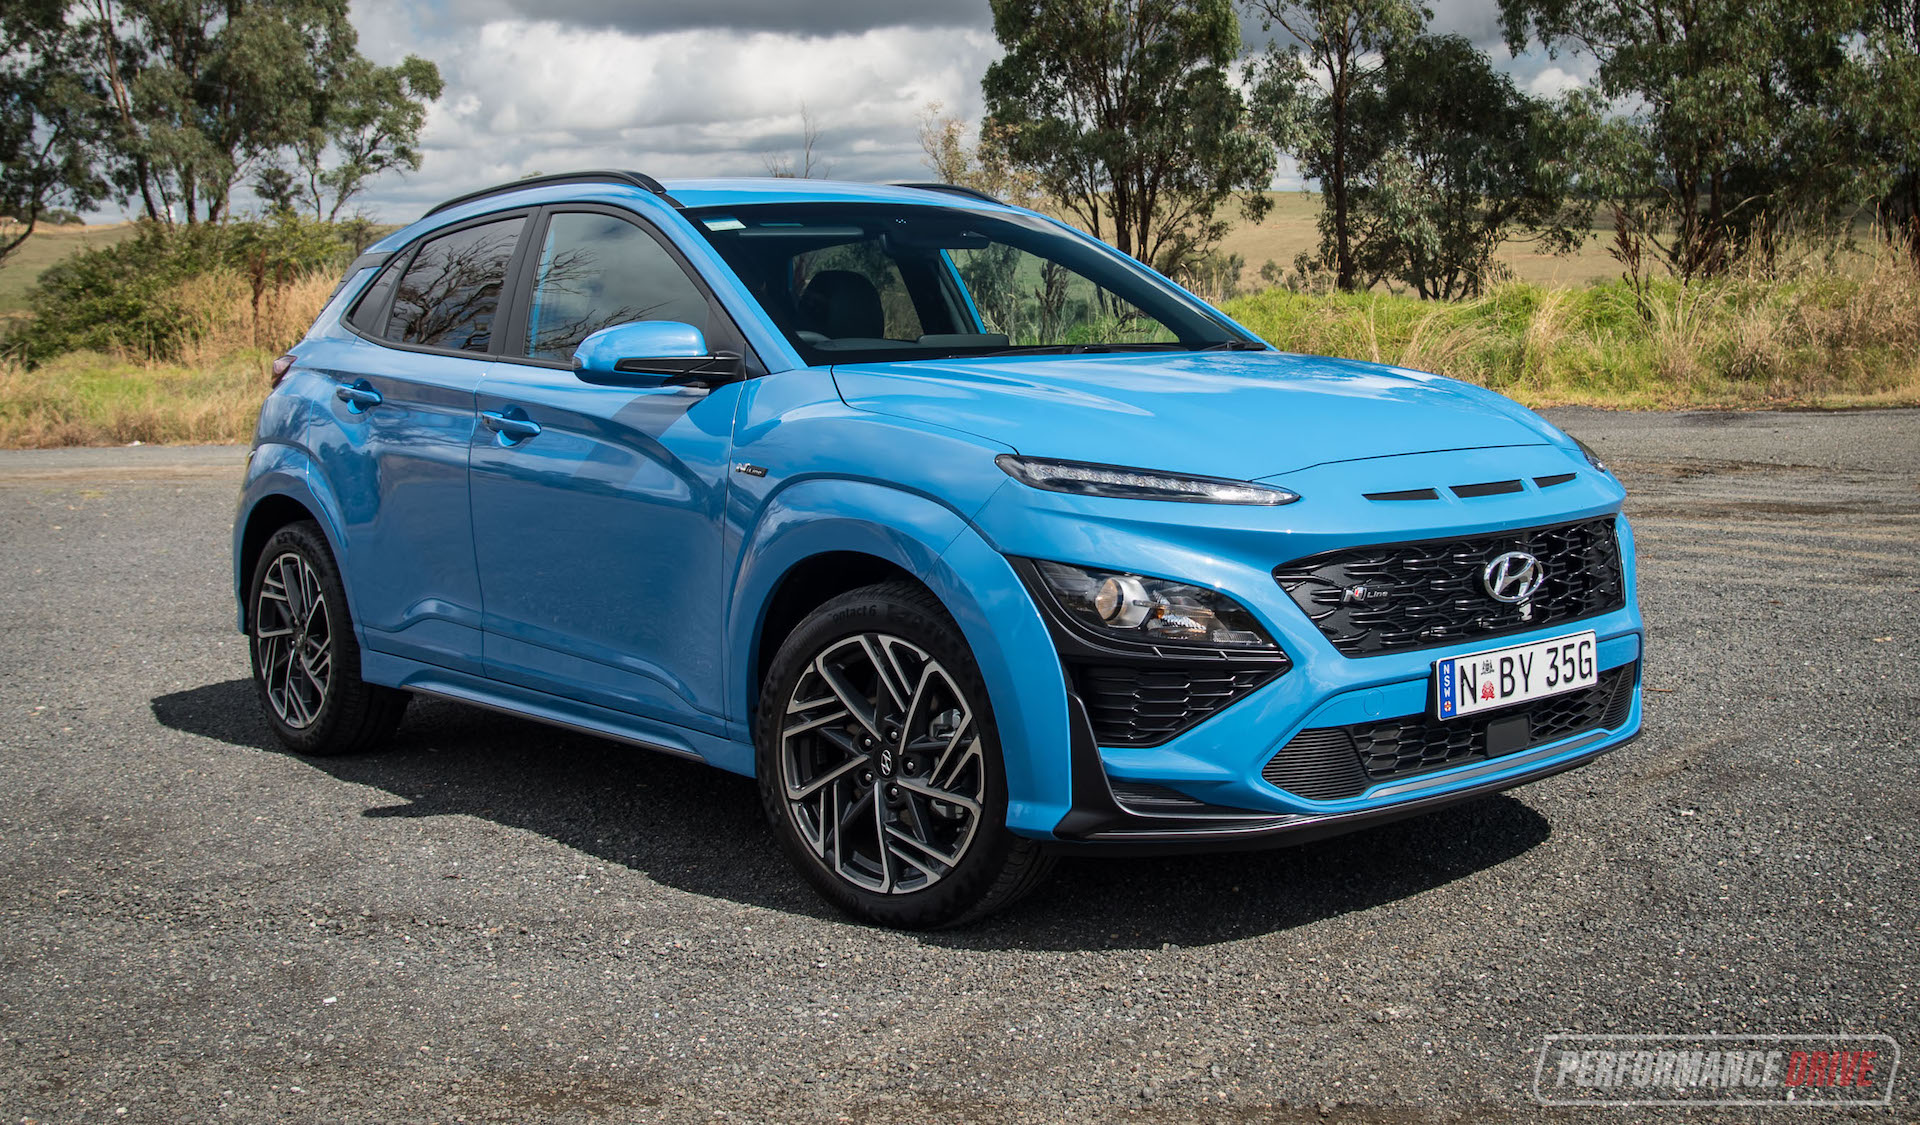 2021 Hyundai Kona review – Australian launch (video)